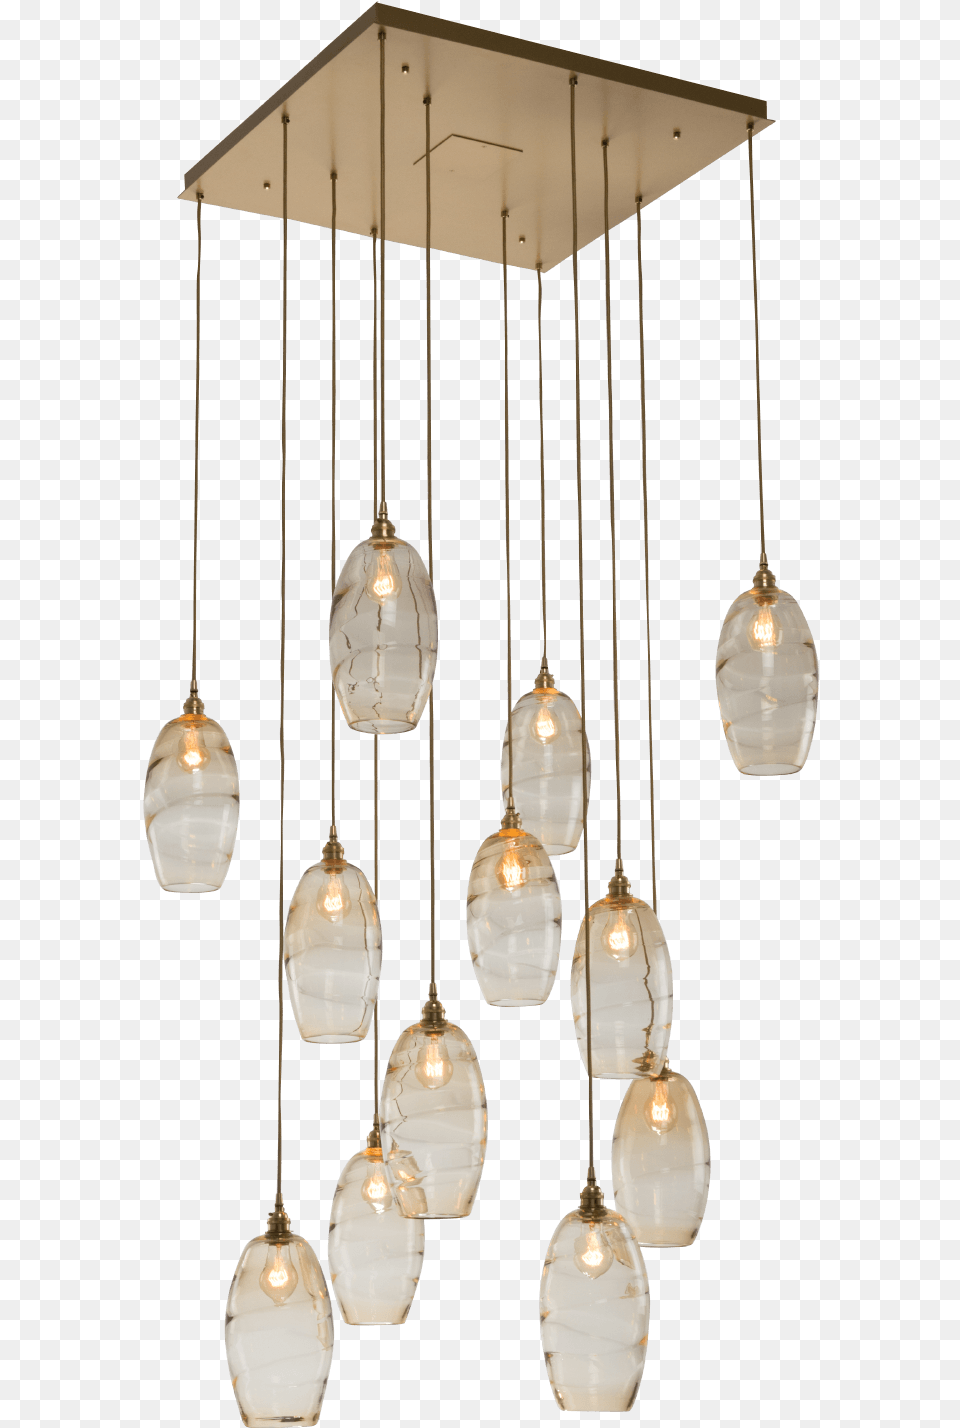 Ceiling Fixture, Chandelier, Lamp, Light Fixture Free Transparent Png